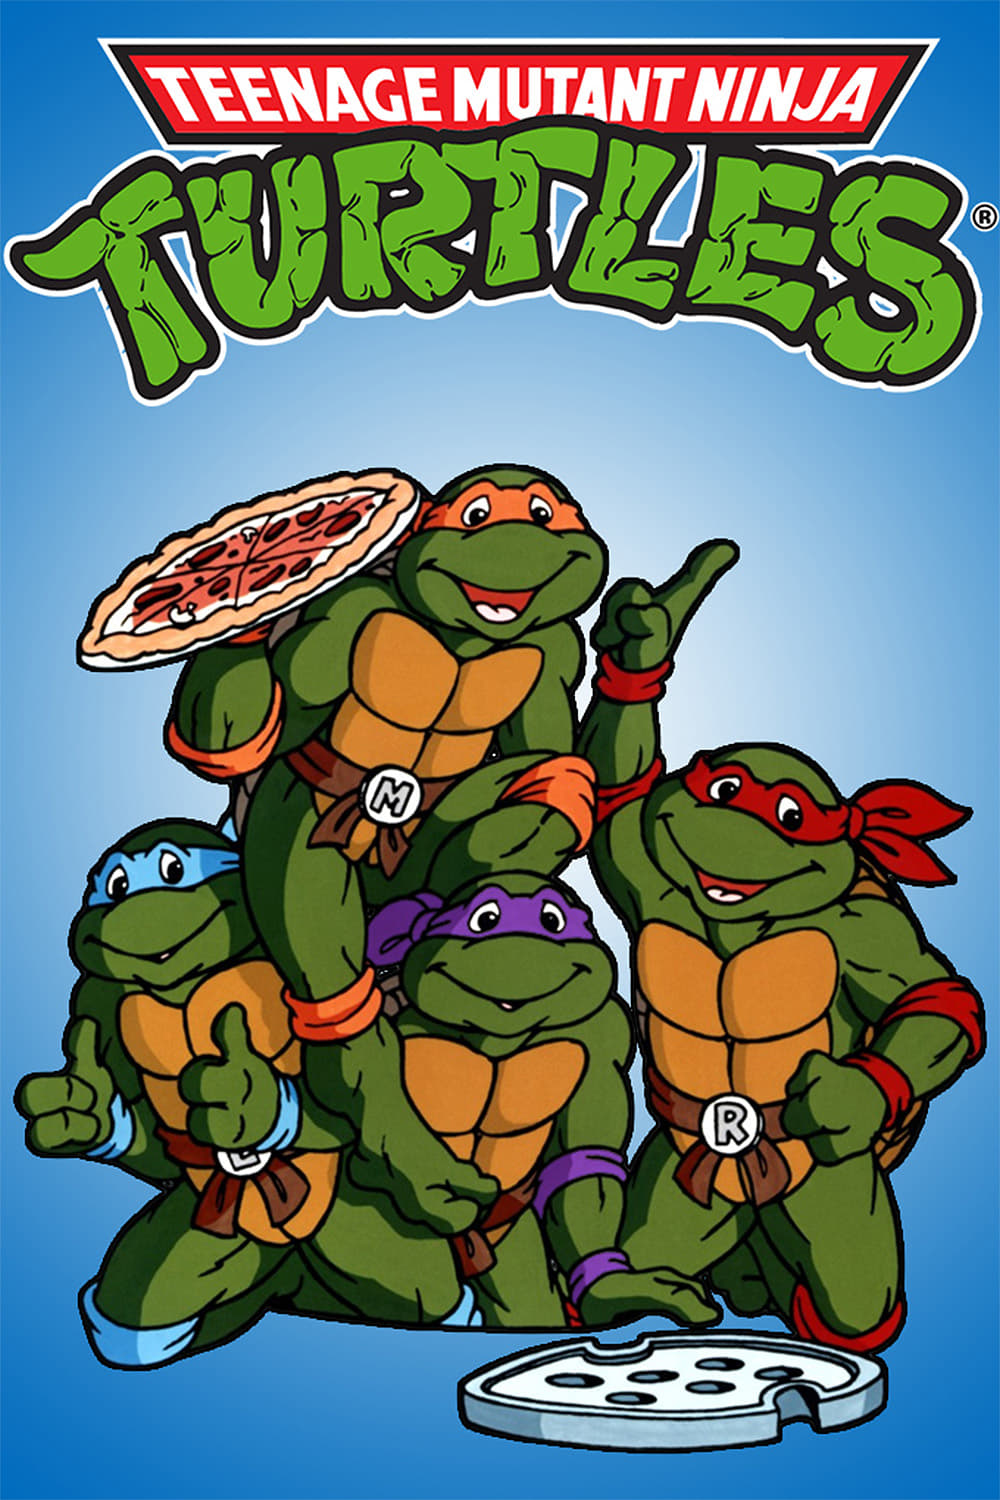 Teenage Mutant Ninja Turtles TV Shows About Teenage Mutant Ninja Turtles